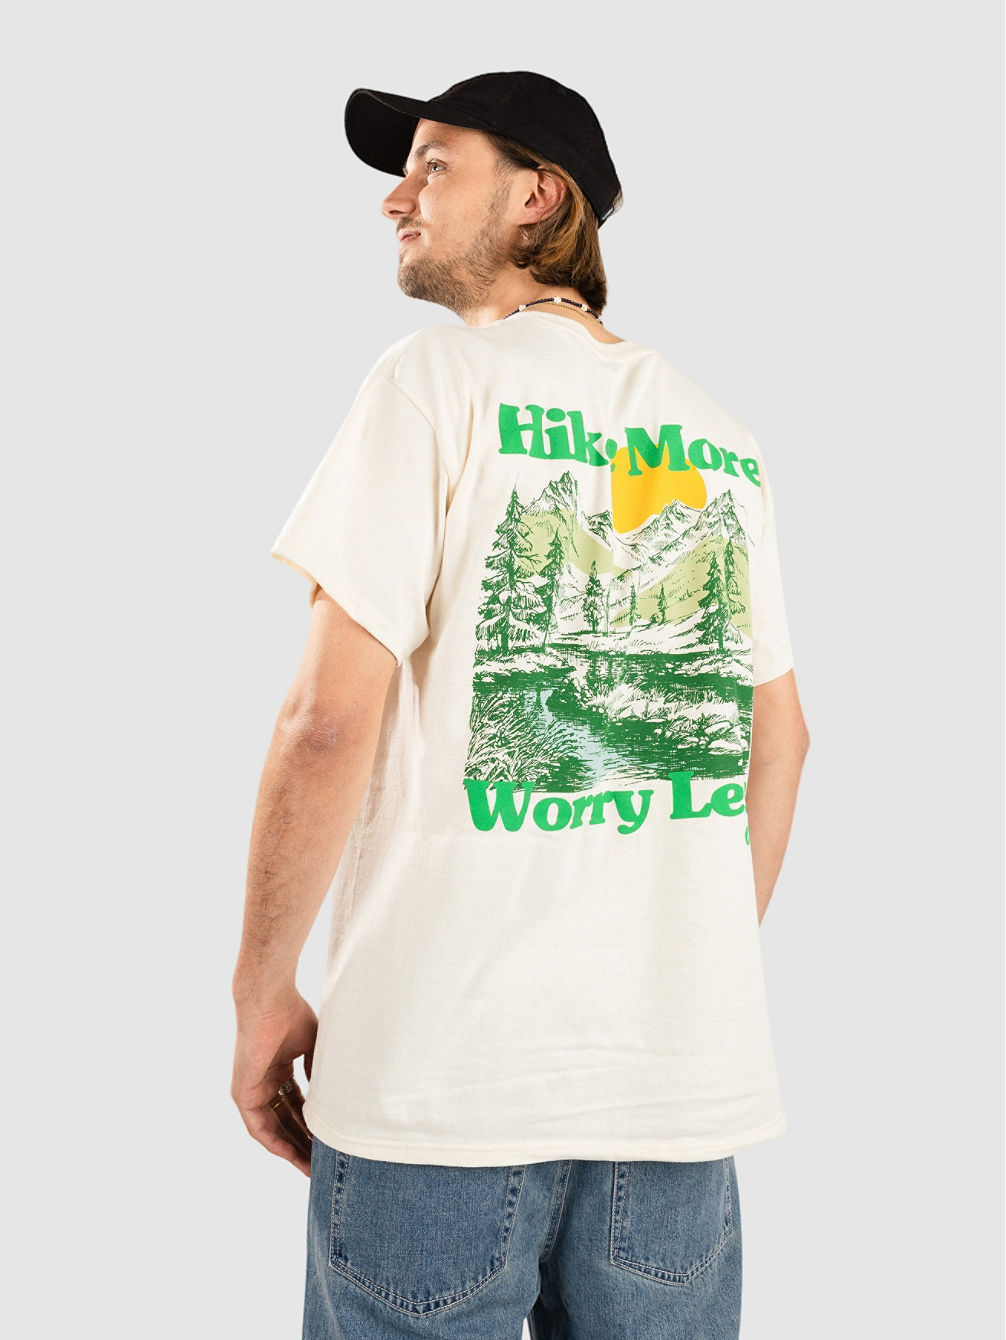 Worry Less Camiseta